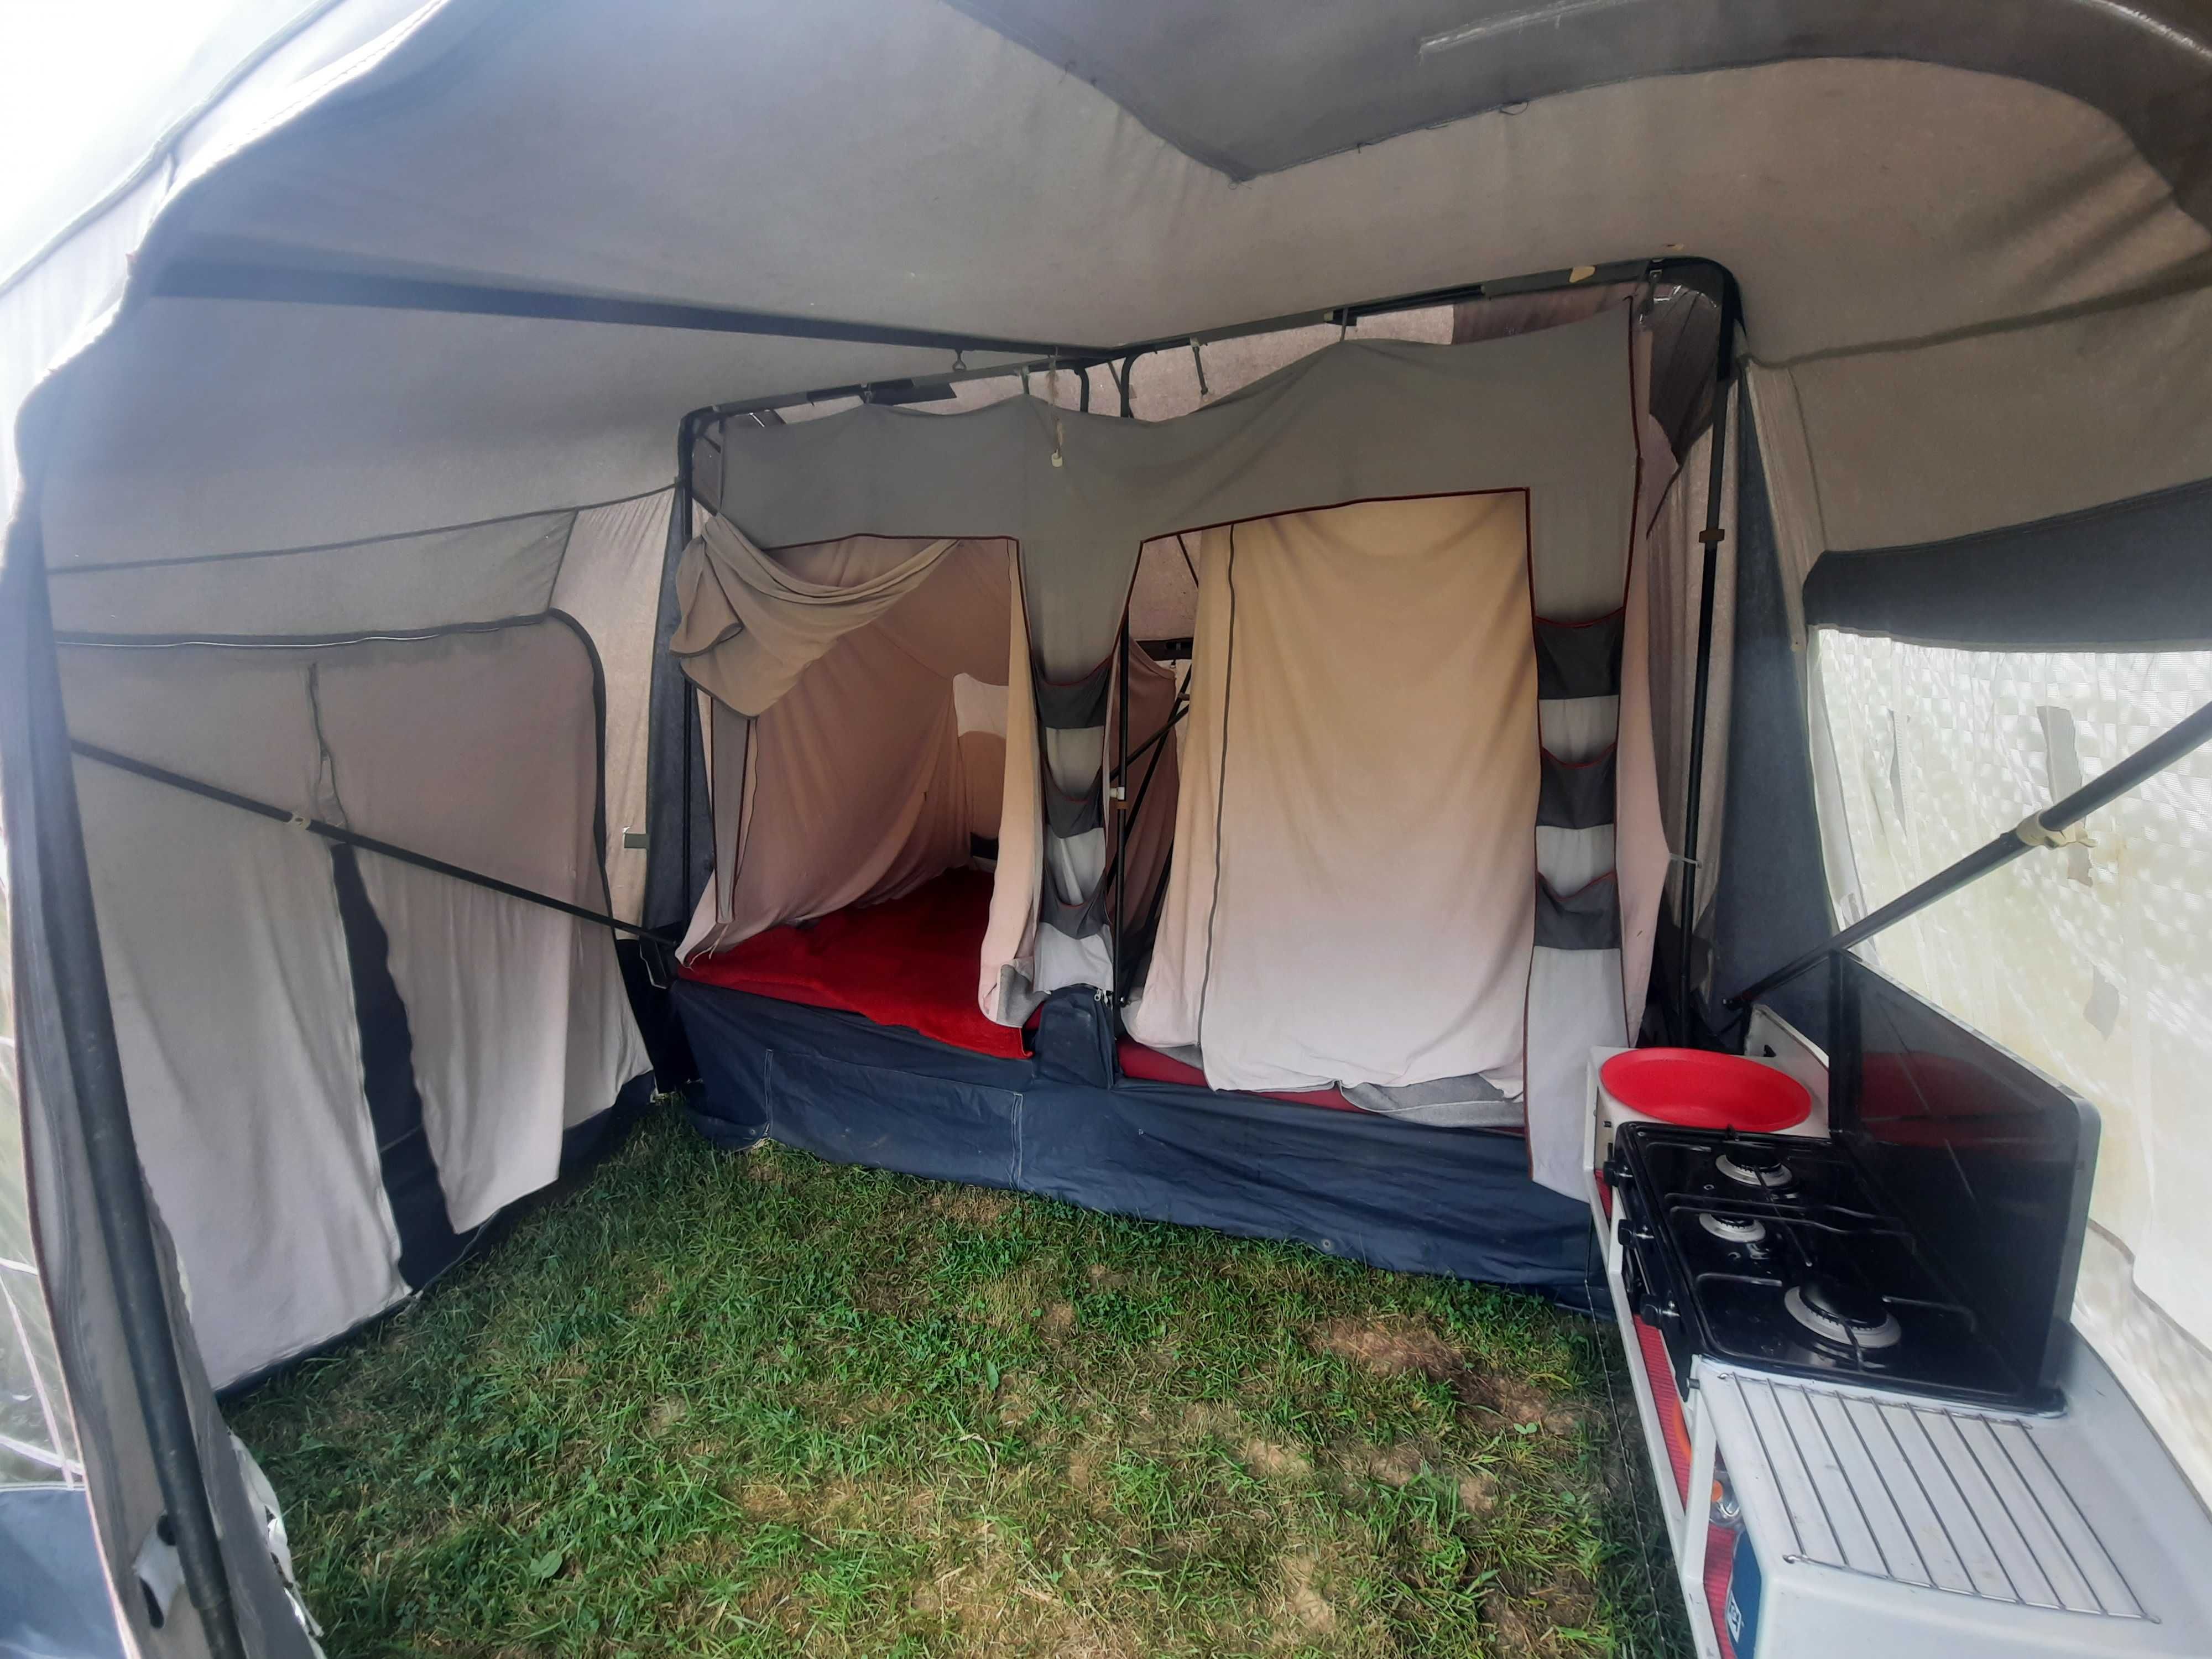 Camp-Let przyczepa i namiot w jednym